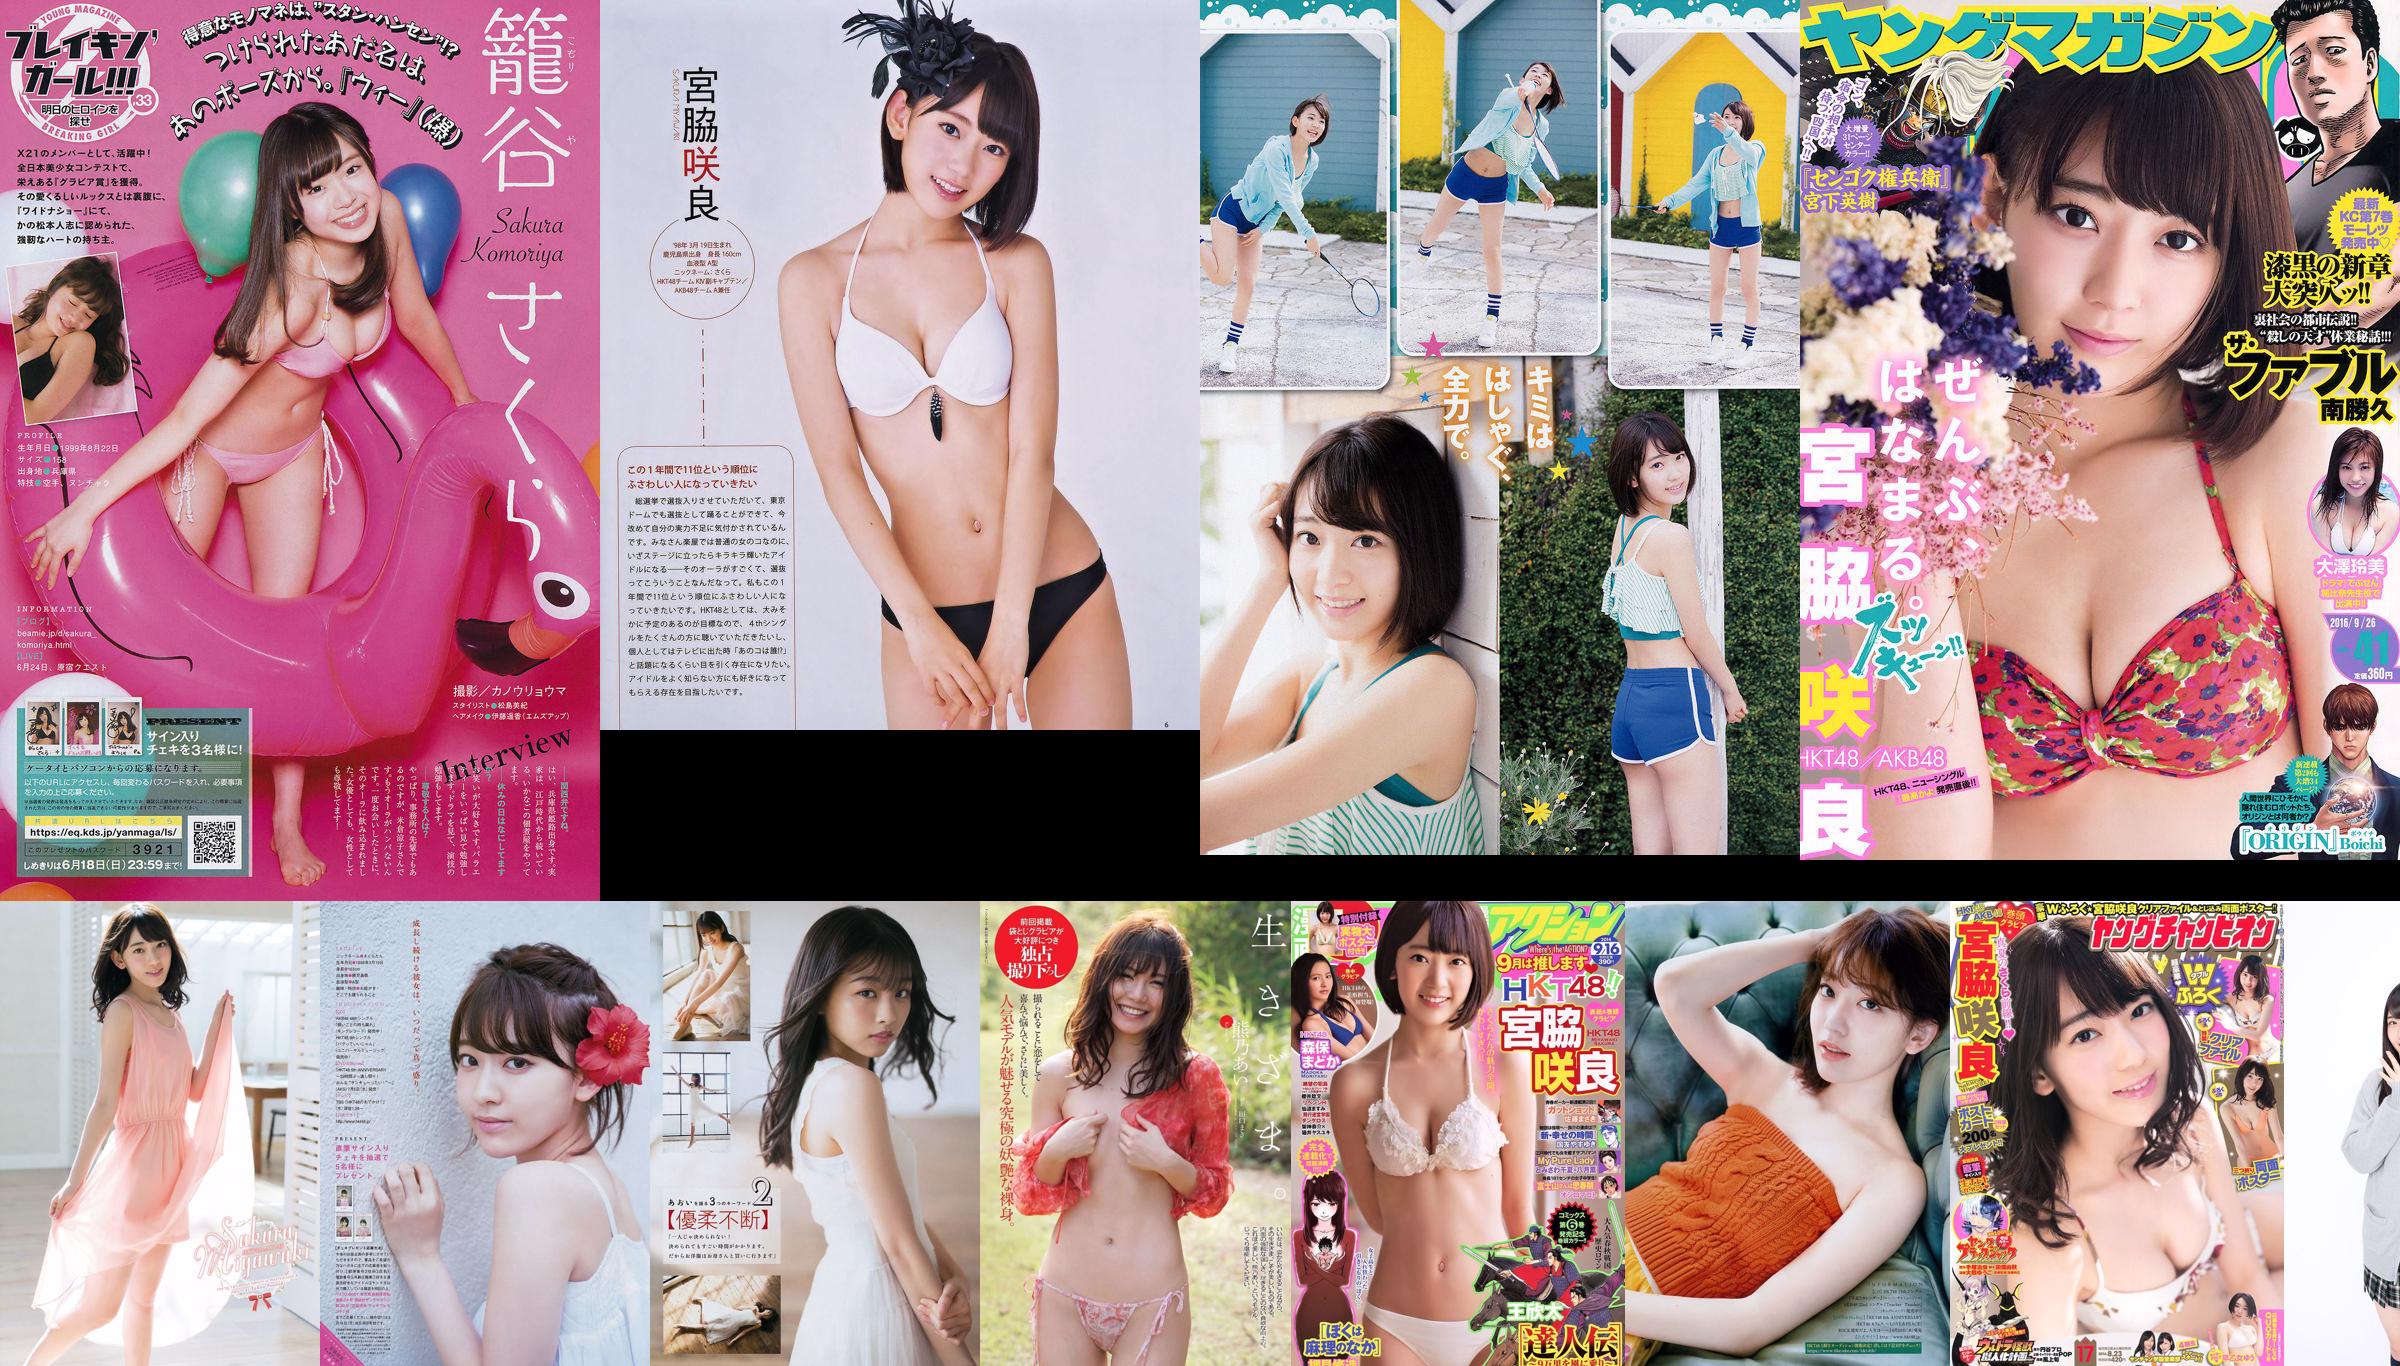 Sakura Miyawaki Ai Kumano Yurina Yanagi Chiyo Koma Eriko Mukaichi Mion Mukaichi SNH48 Kamen Joshi [Weekly Playboy] 2015 No.22 Ảnh No.d7ac77 Trang 4